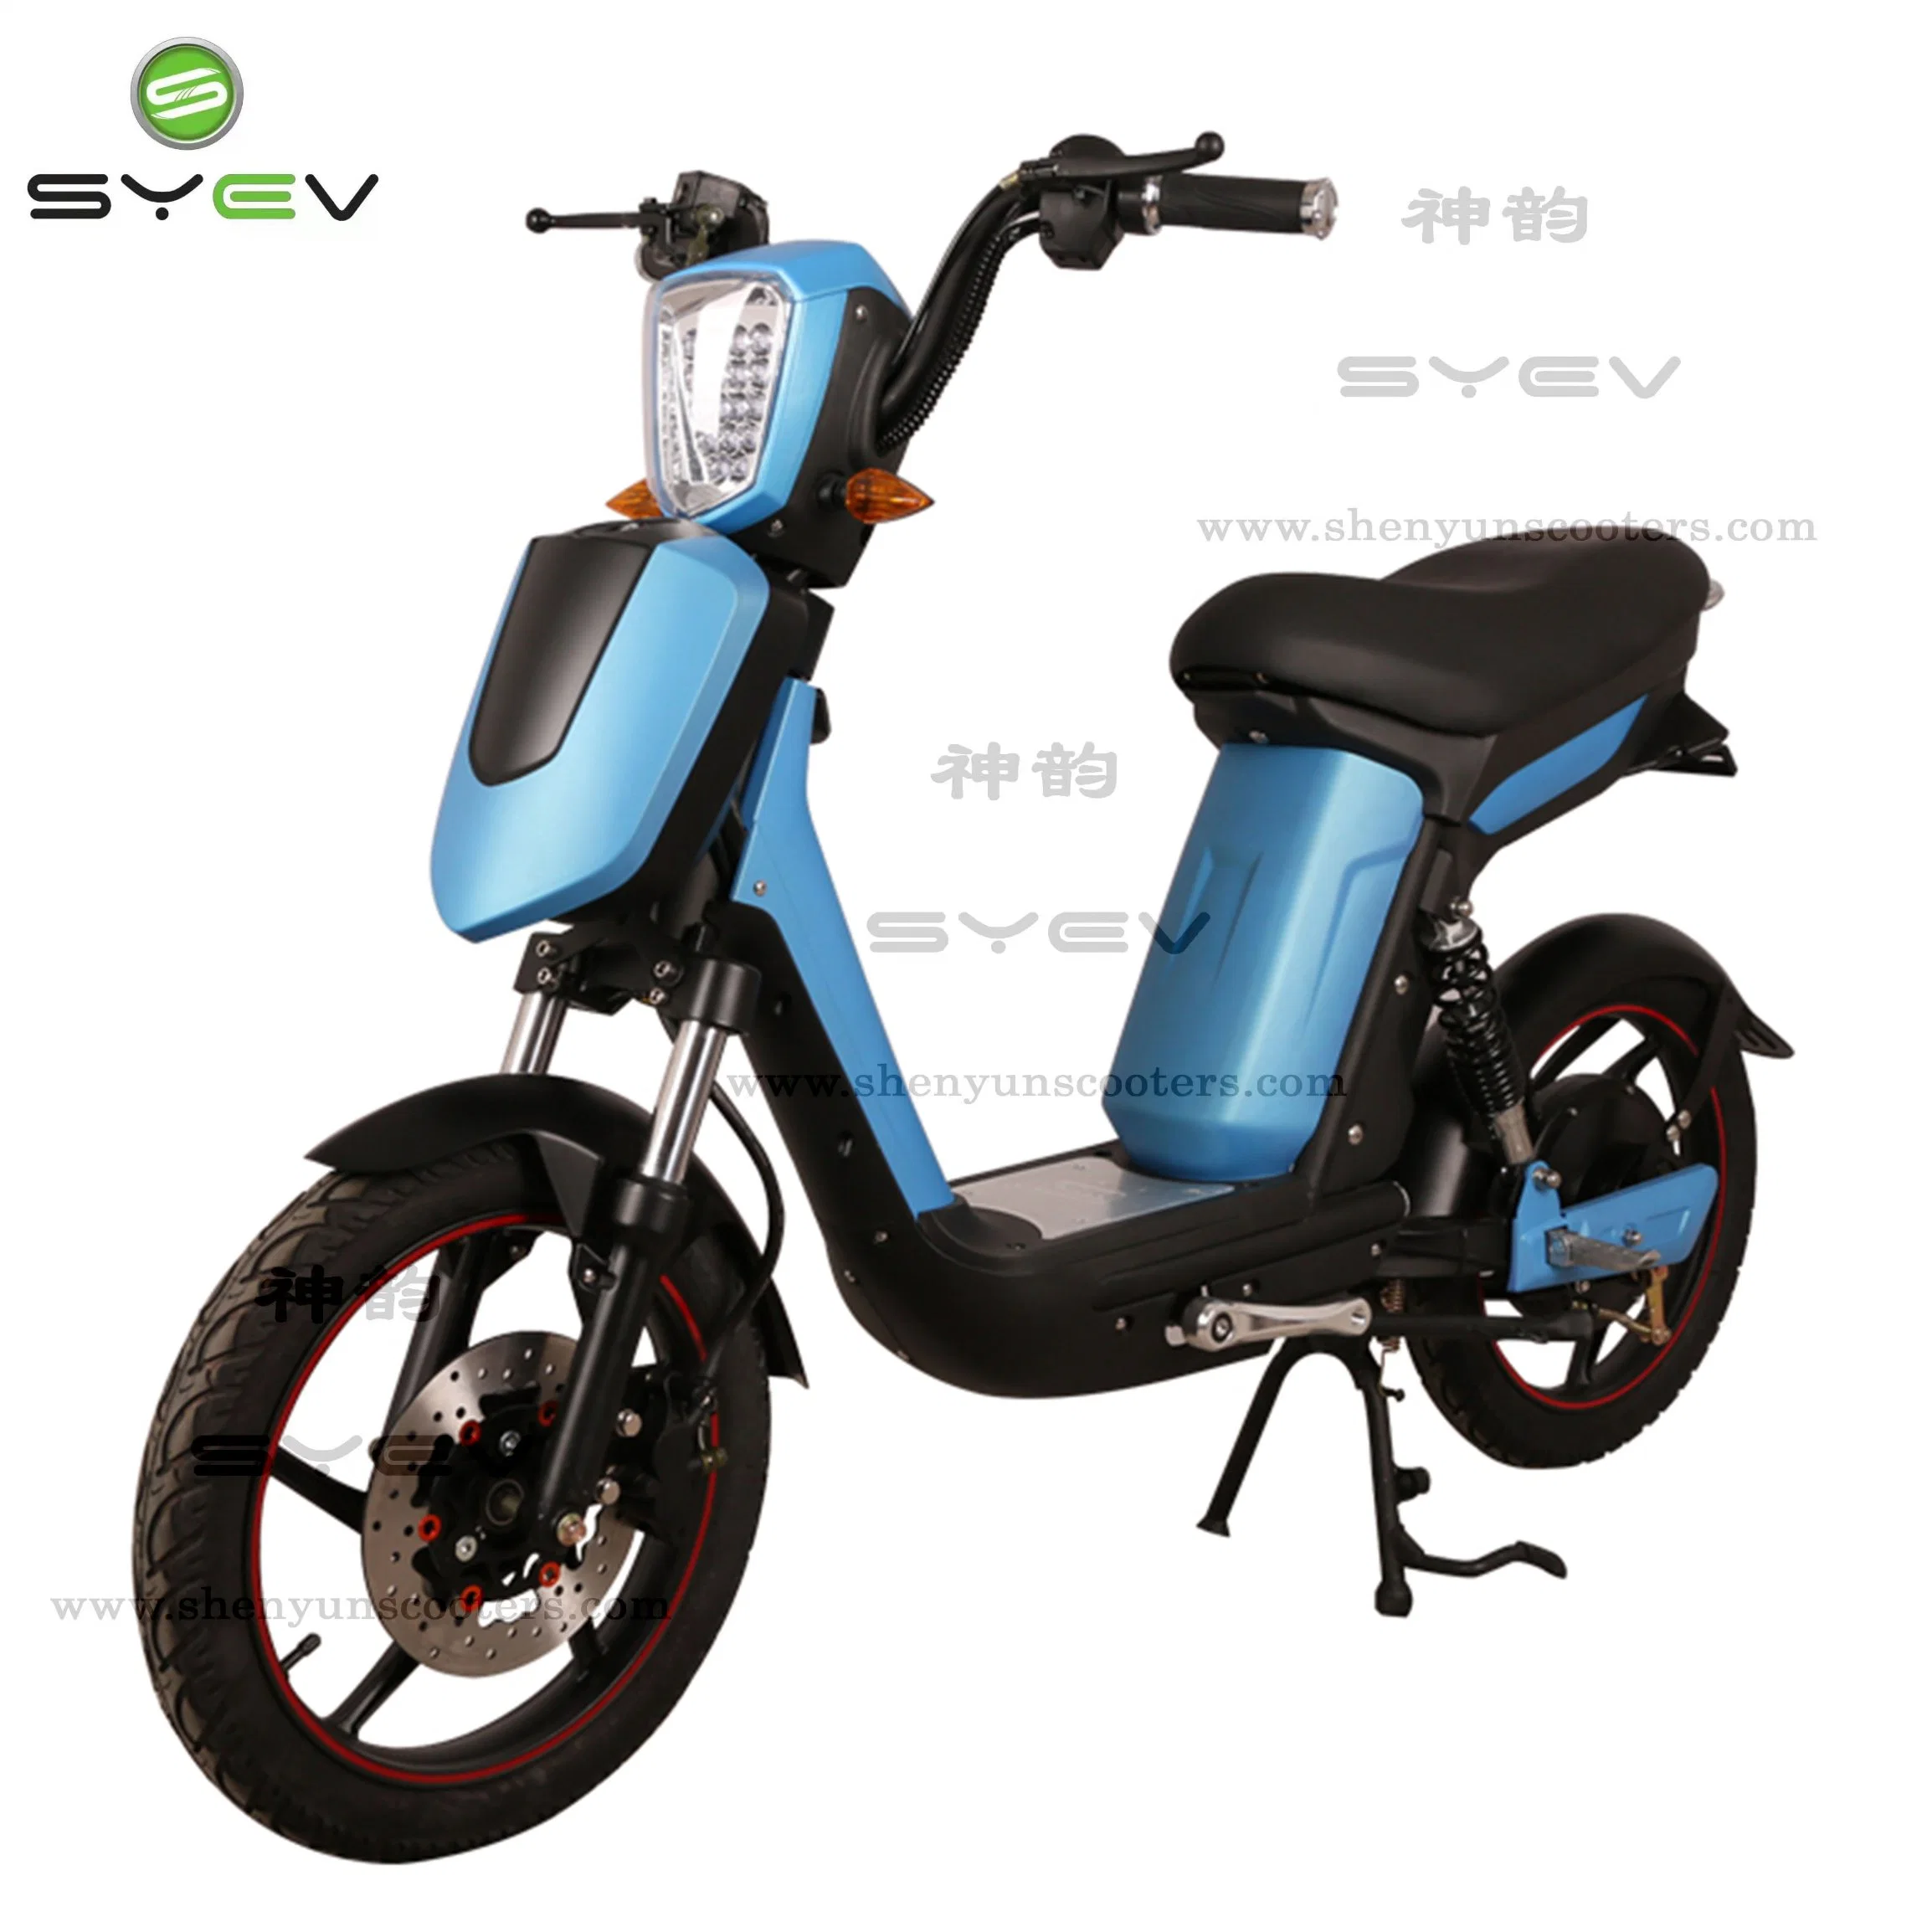 Syev Günstige Preis gute Qualität 500W/800W BLDC Motor Chinese Electric Motorrad Roller Fahrrad mit Disc / Trommelbremsen